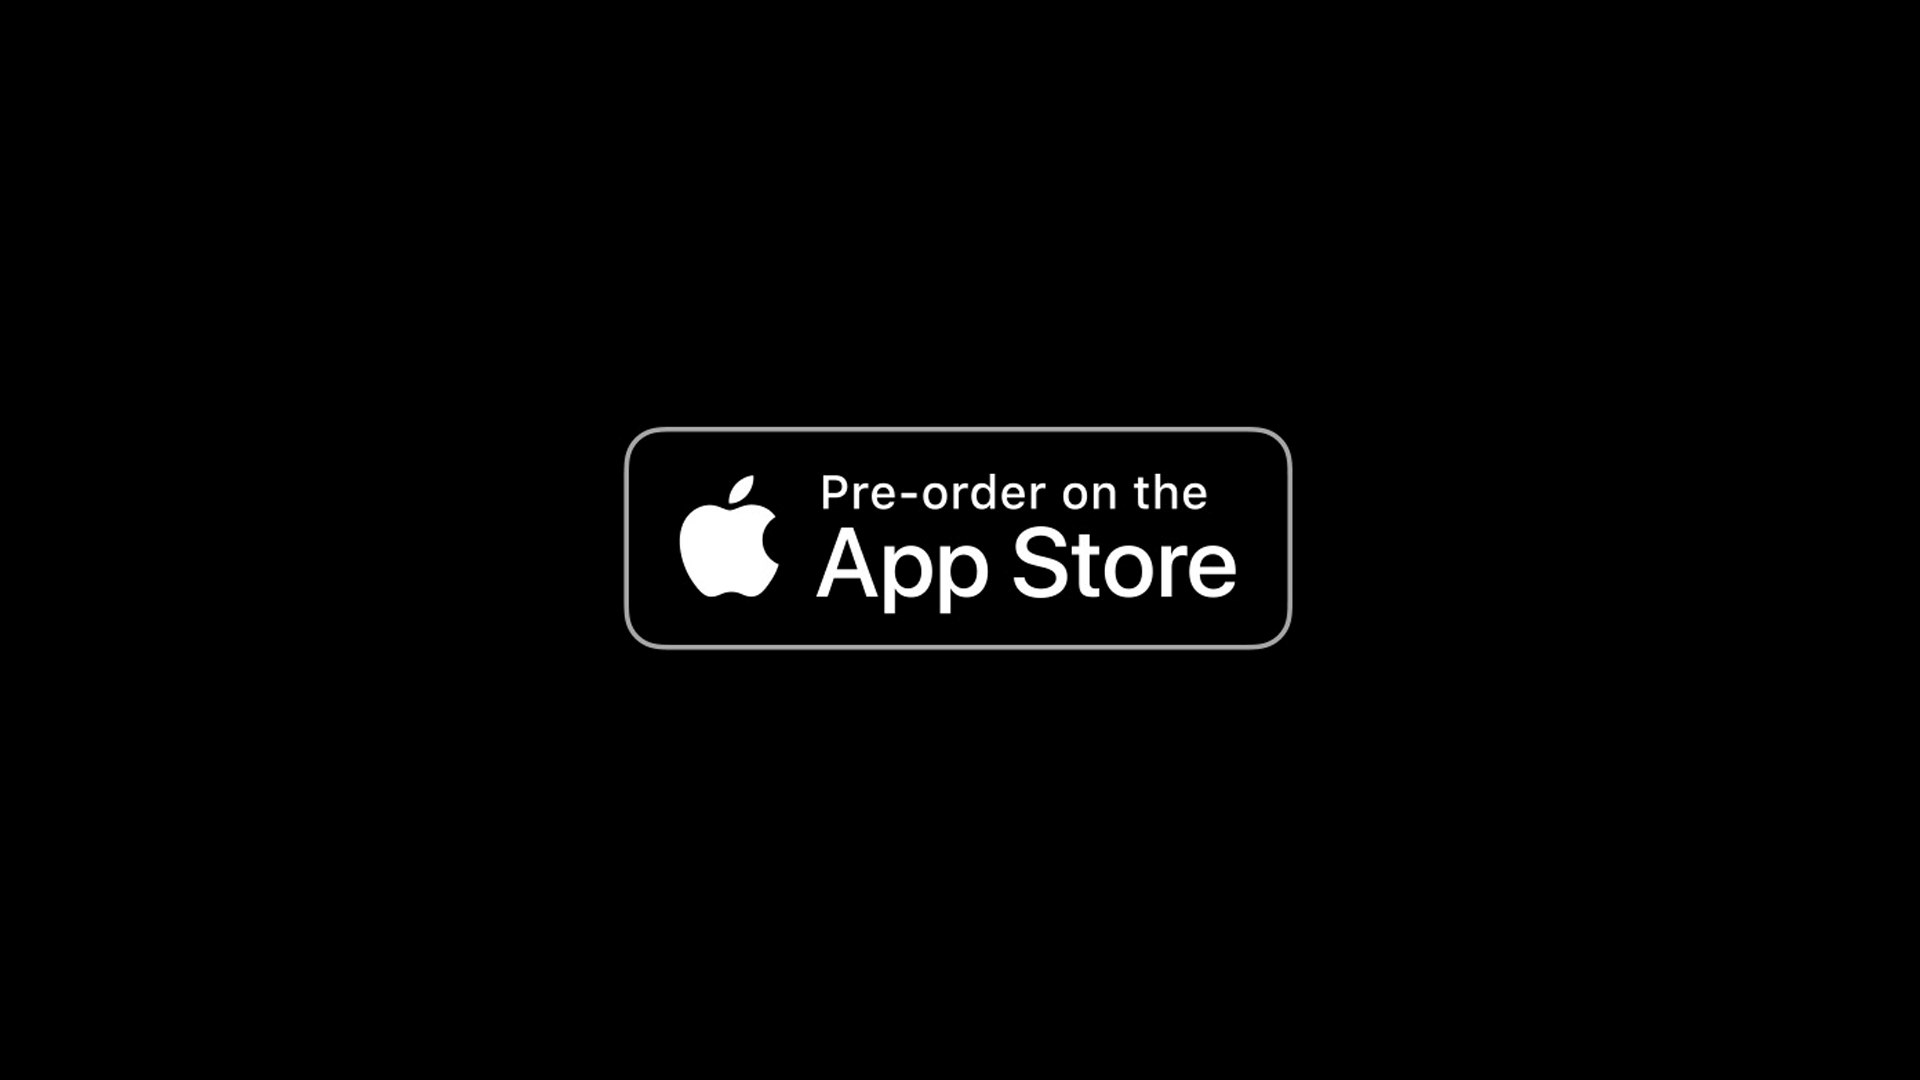 Разработчики теперь могут предлагать приложения для предзаказа в App Store за 180 дней.